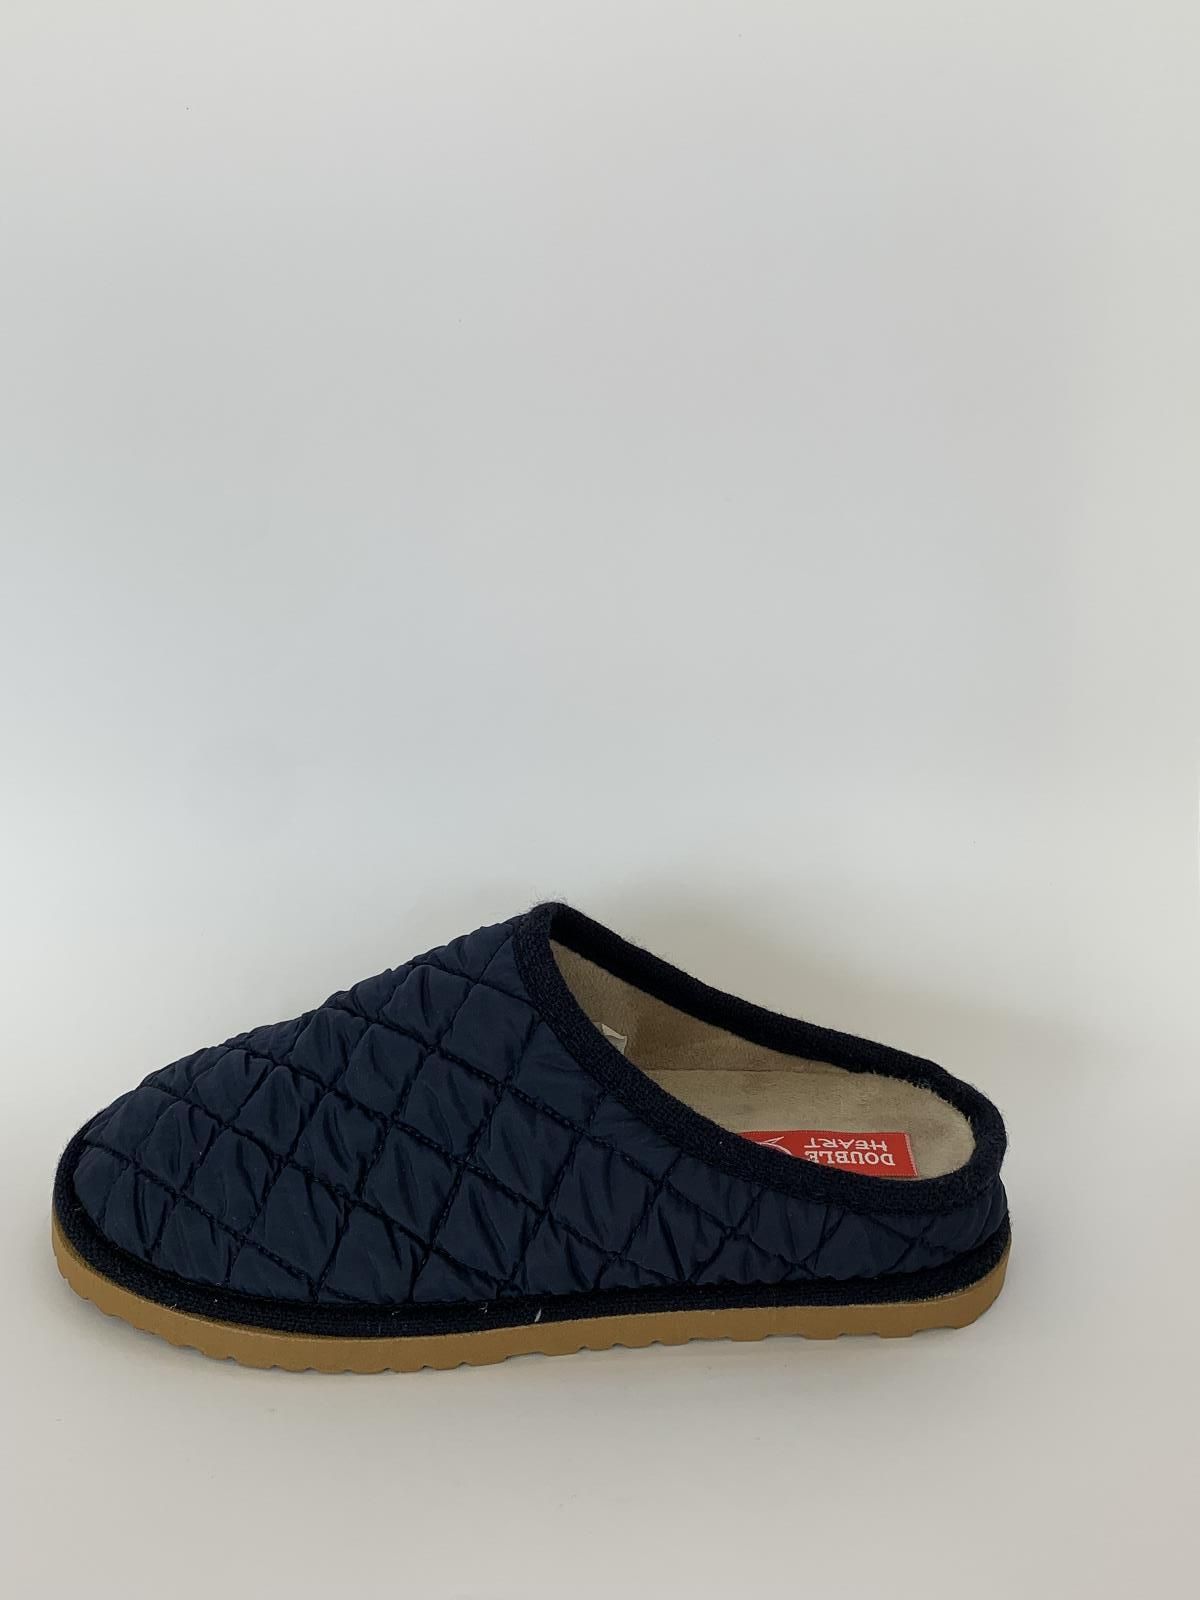 Wit Produkt B Pantoffel Blauw dames (Mul.Matelassé Blauw - 3000) - Schoenen Luca